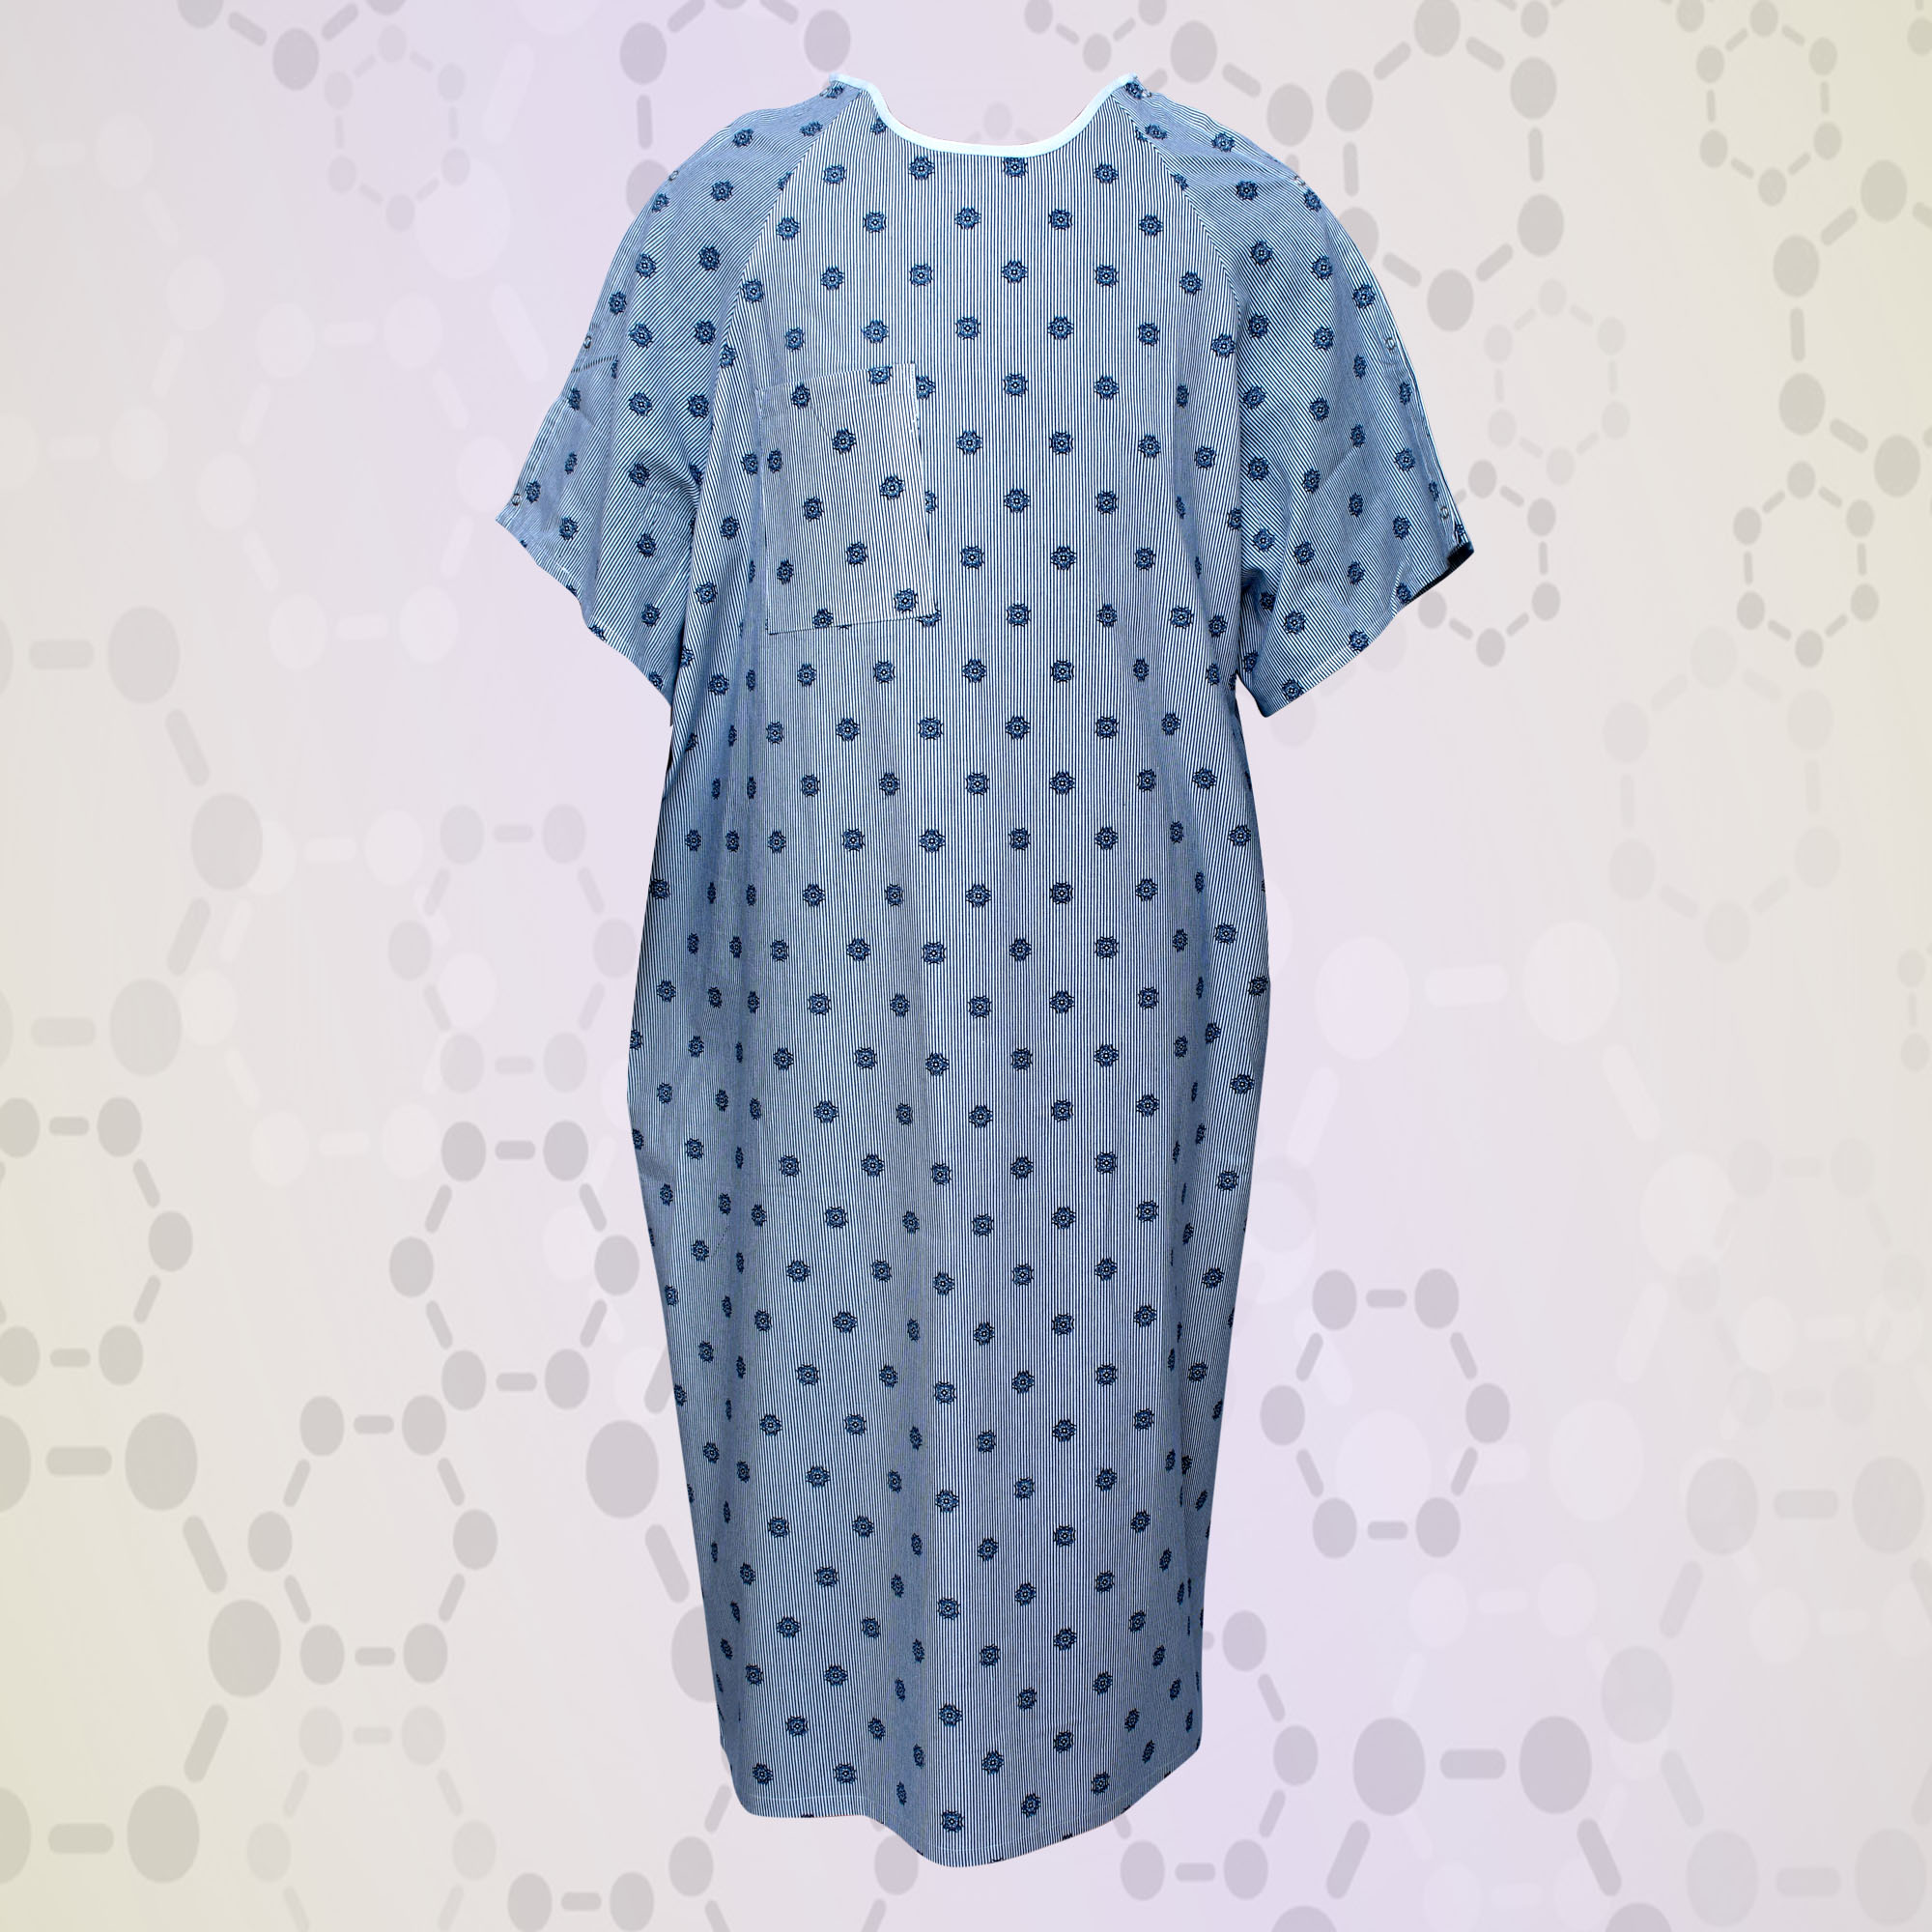 Adult Patient Gown Regular Size | Sold Per Dozen | Wholesale